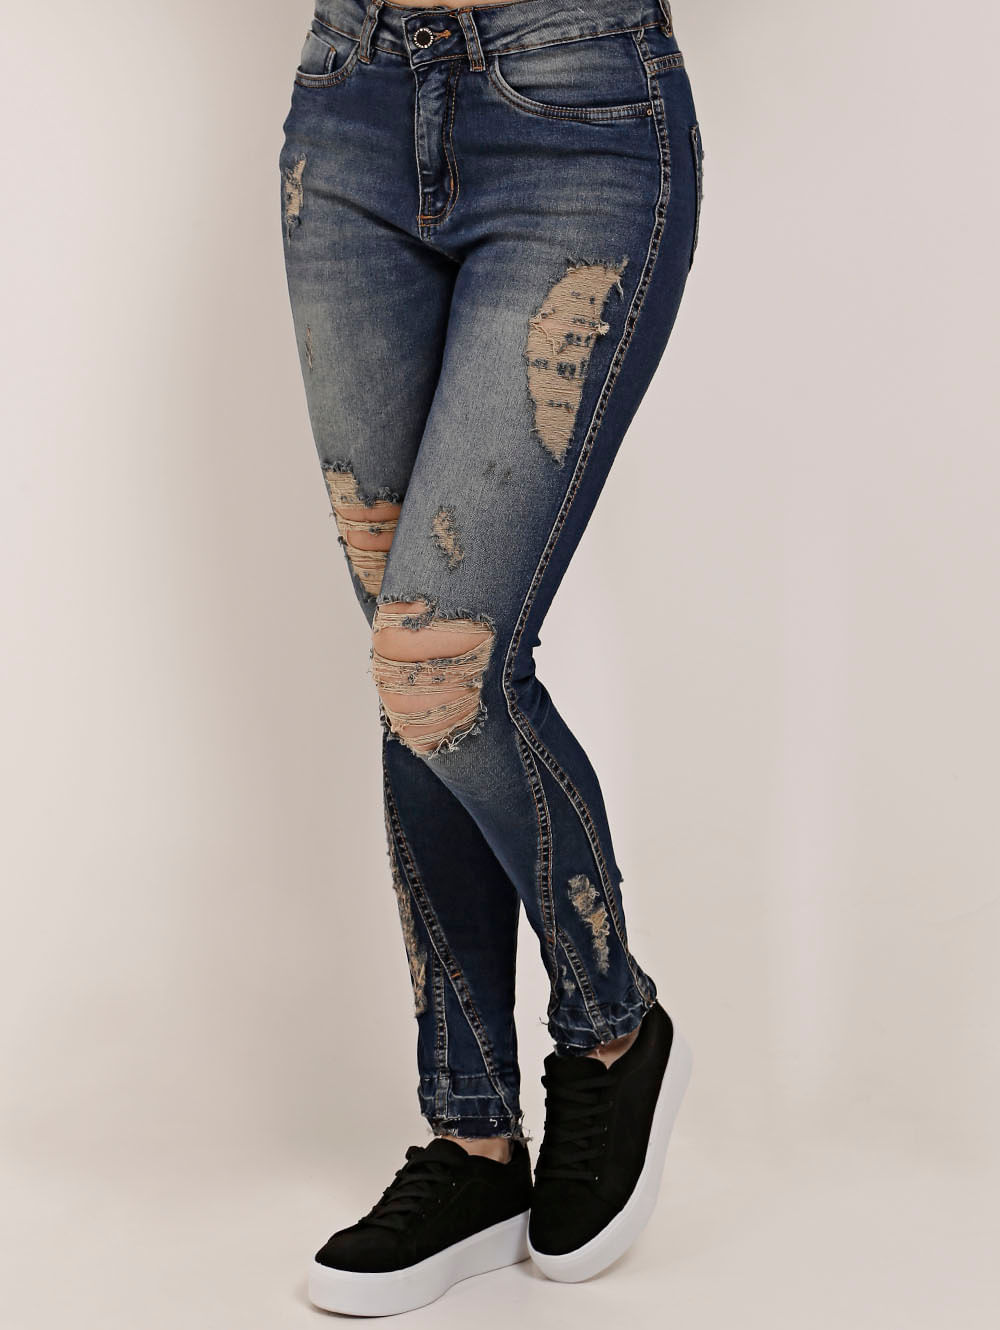 pompeia jeans